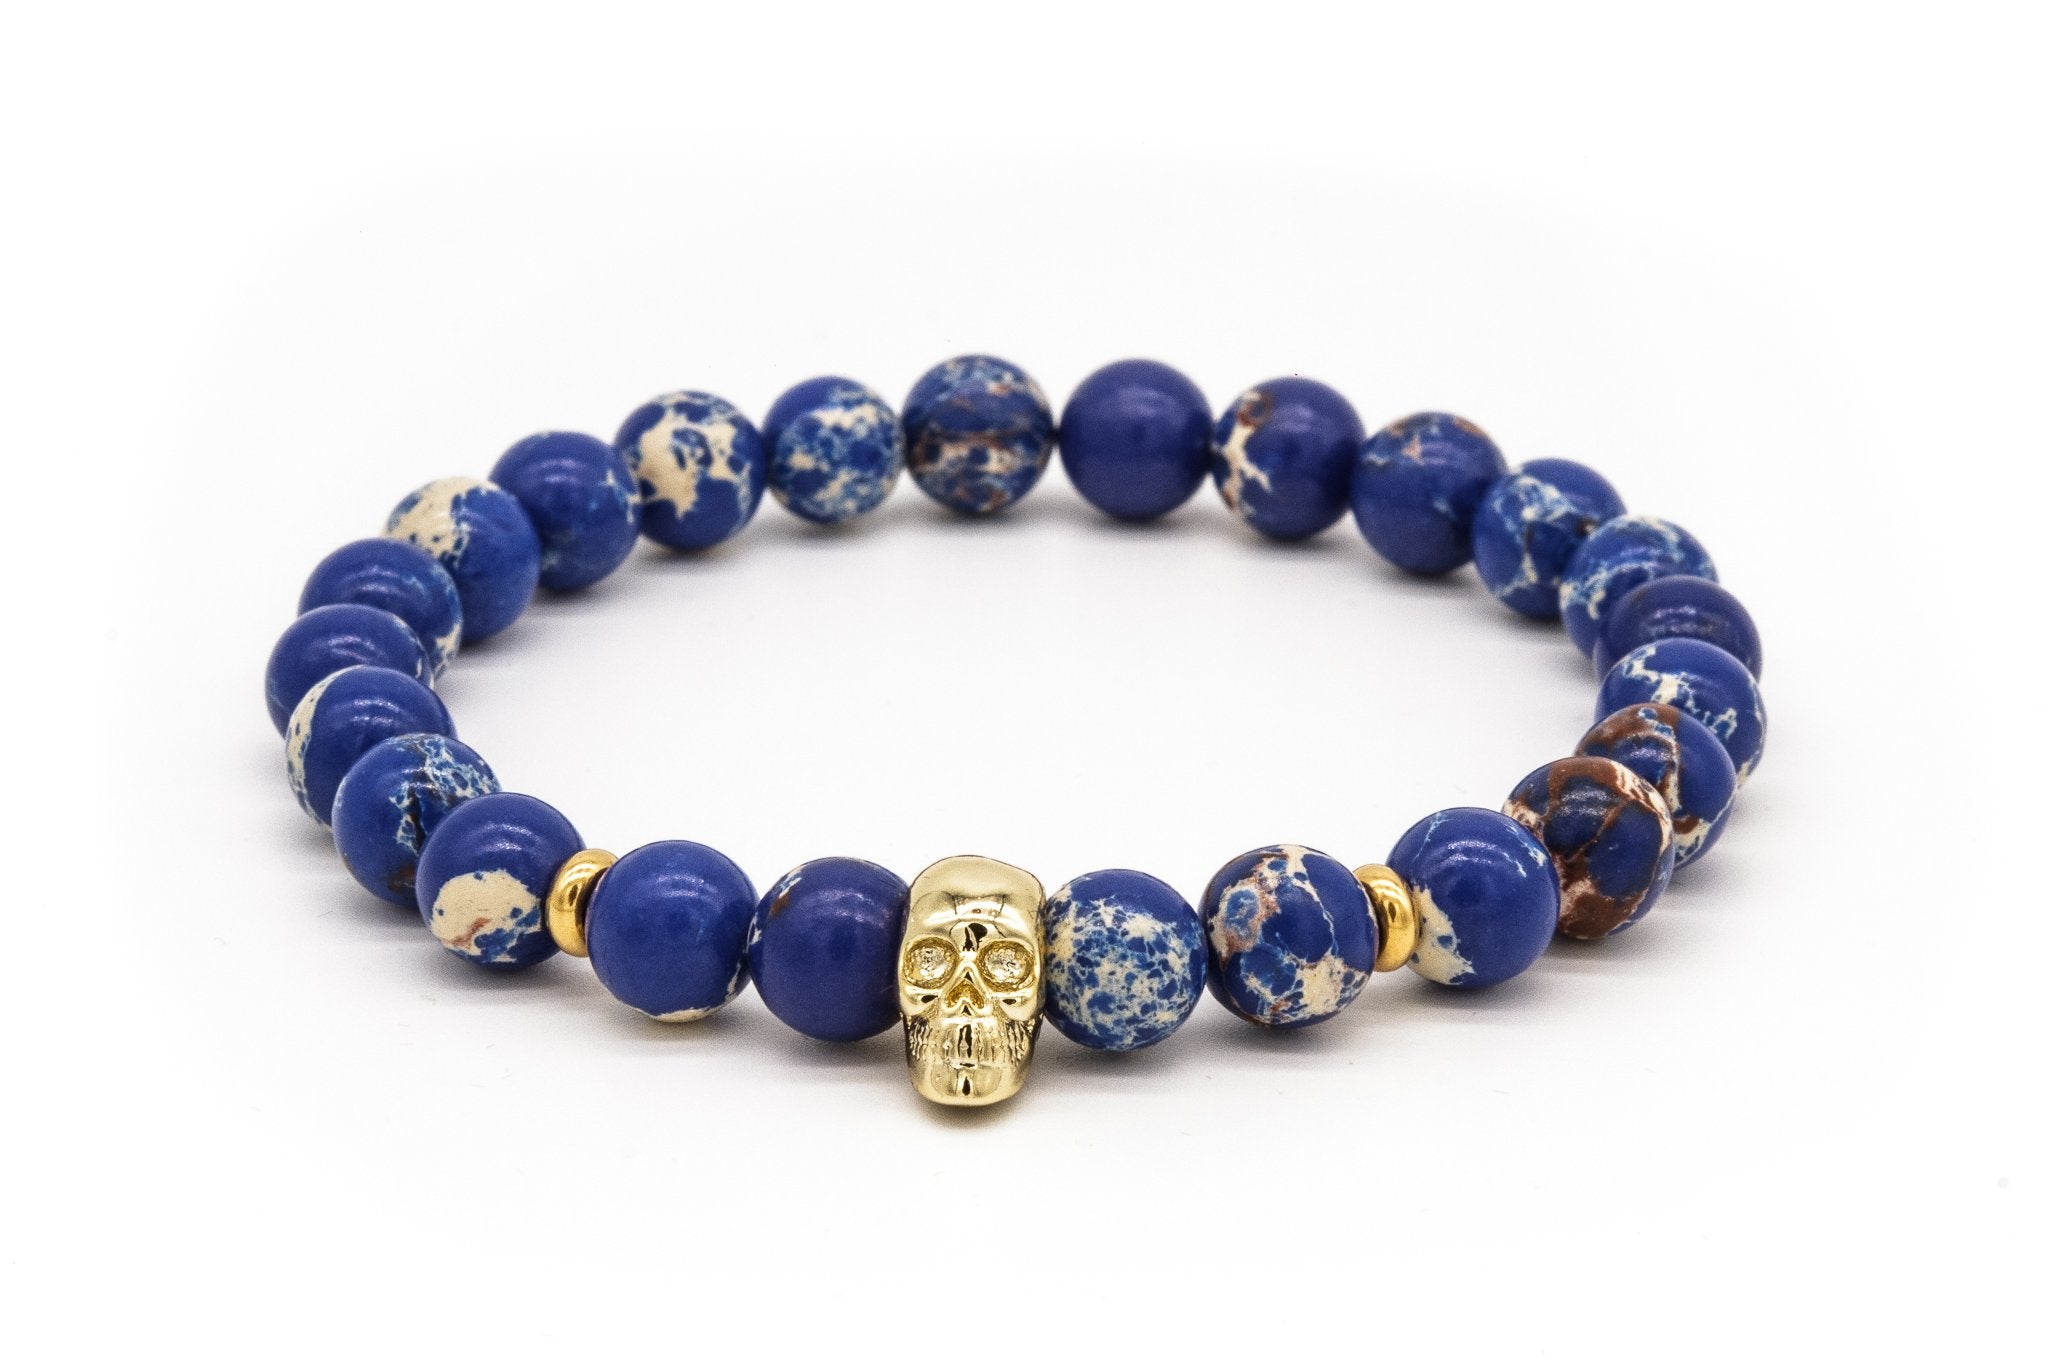 UNCOMMON Men's Beads Bracelet One Gold Skull Charm Blue Jasper Beads